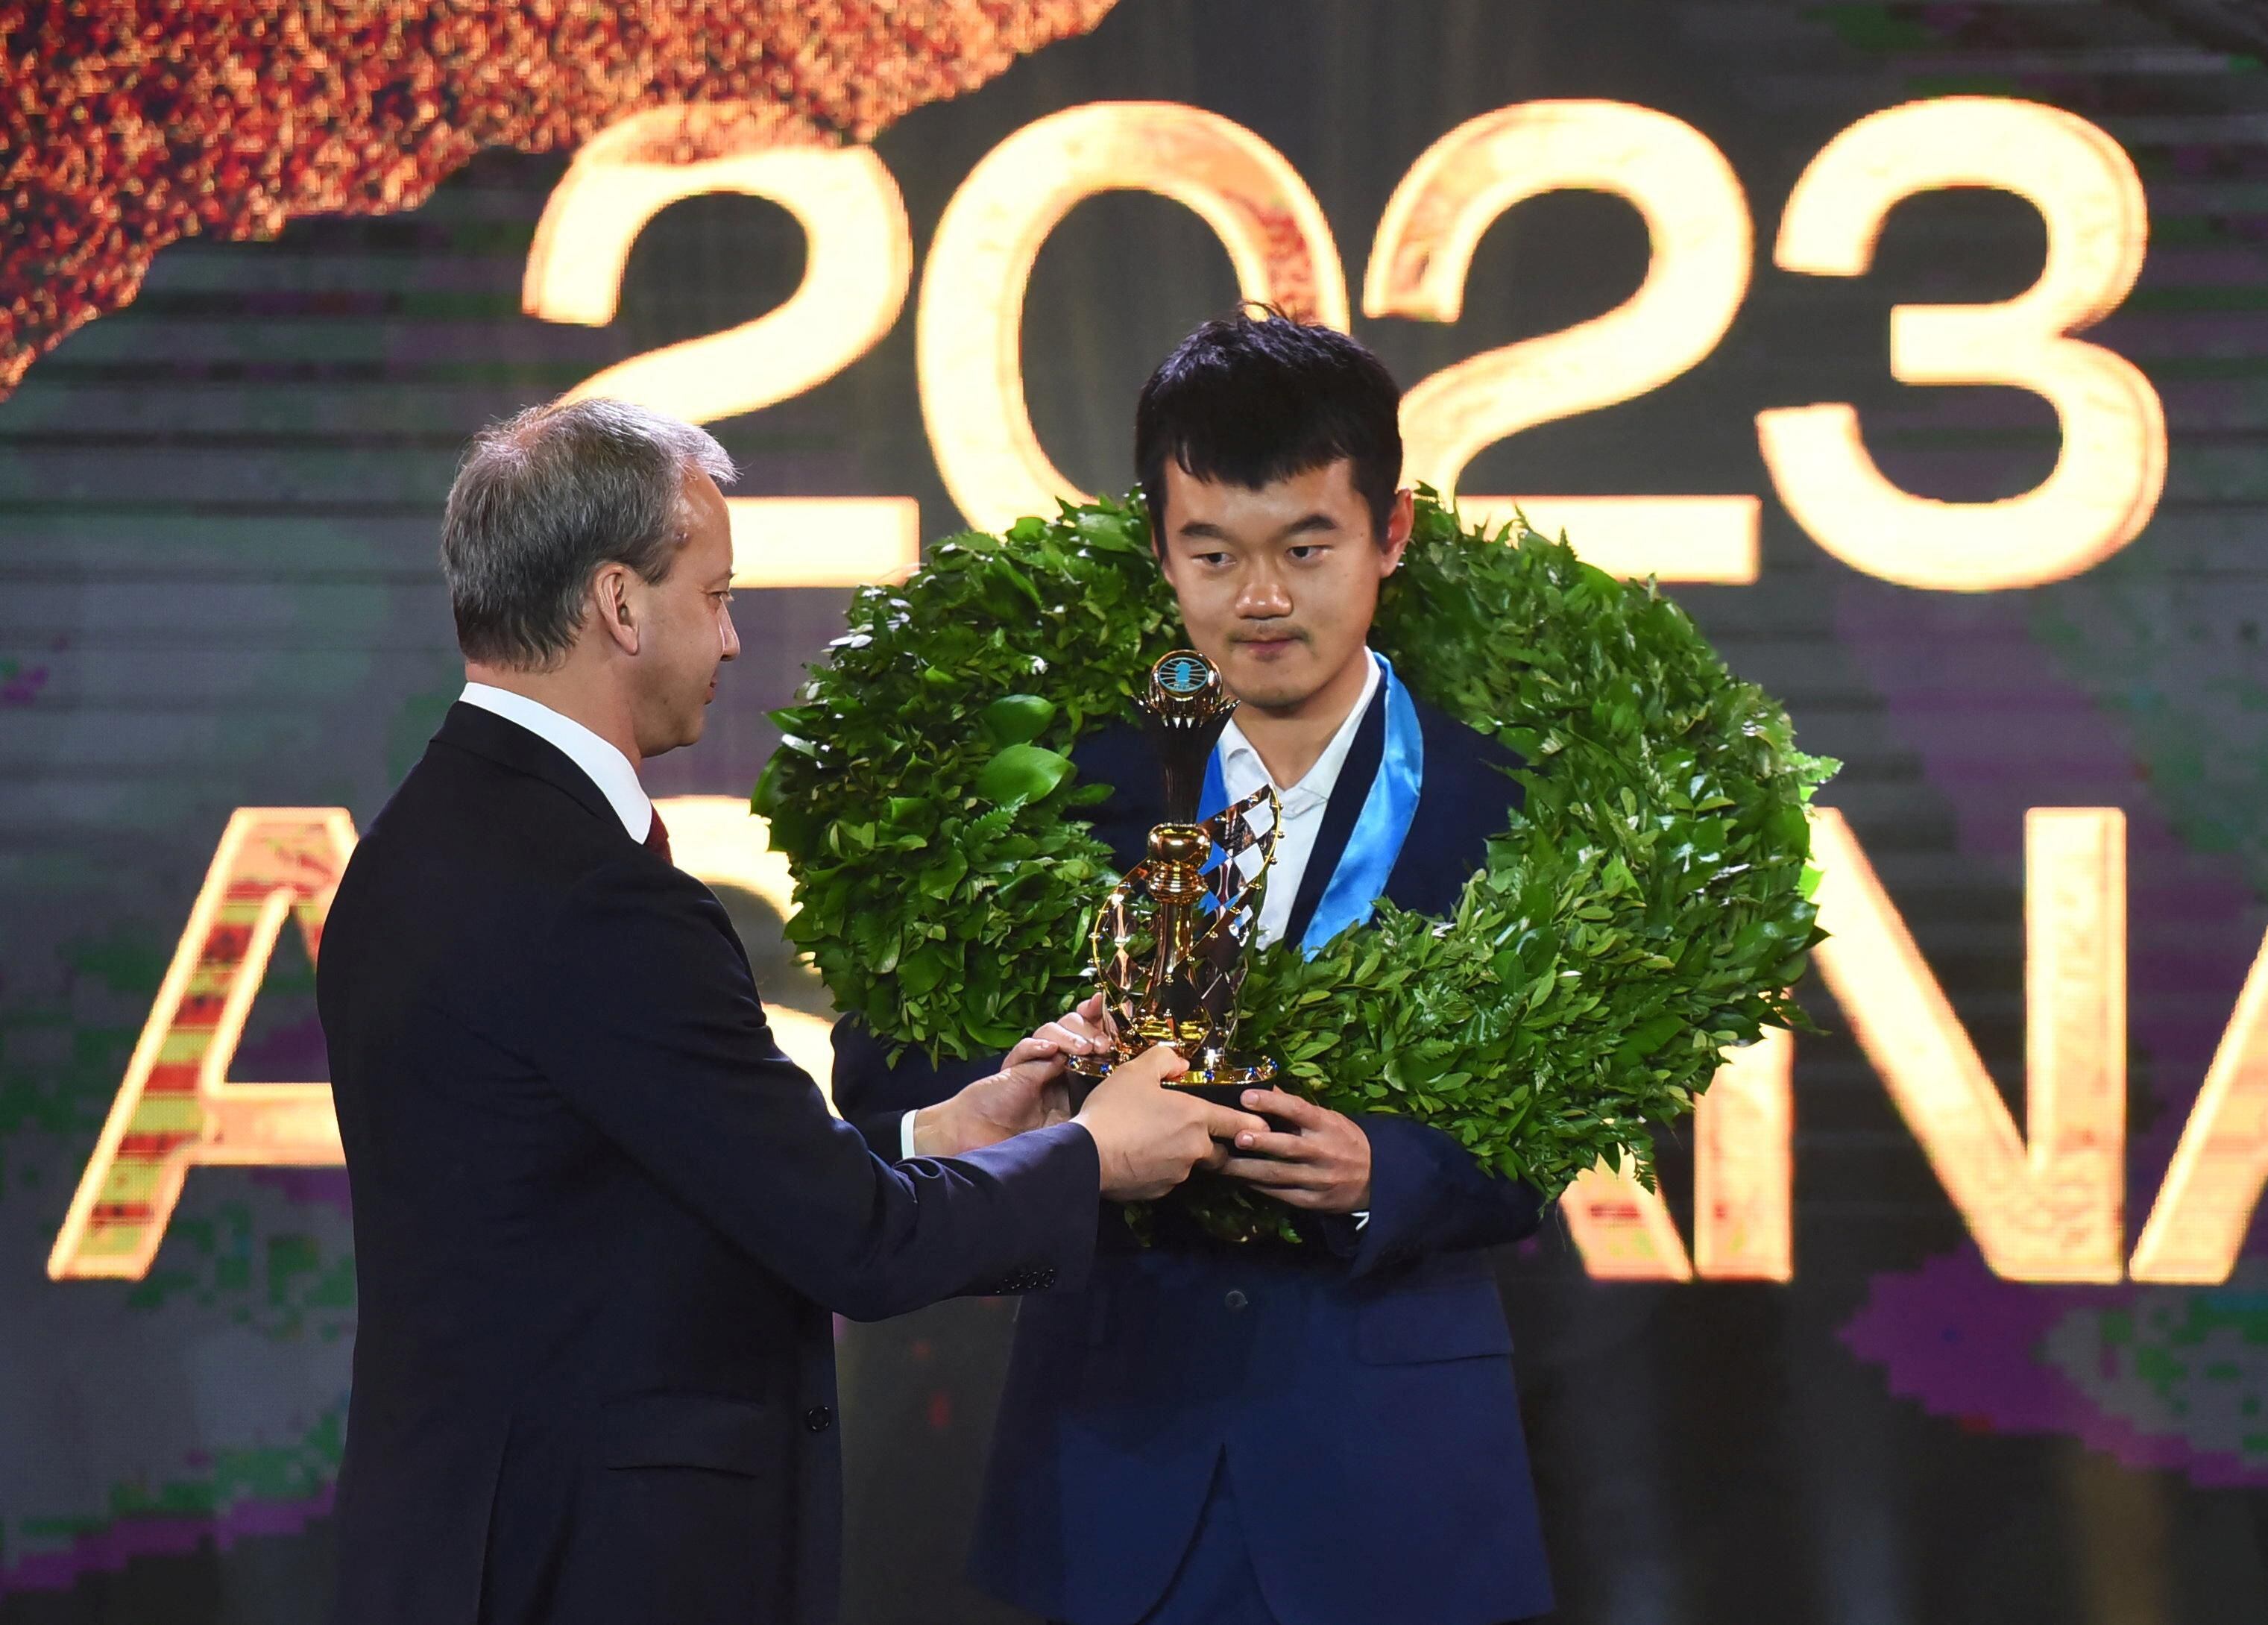 Ding Liren derrota Nepomniachtchti e é o primeiro chinês campeão mundial de  xadrez